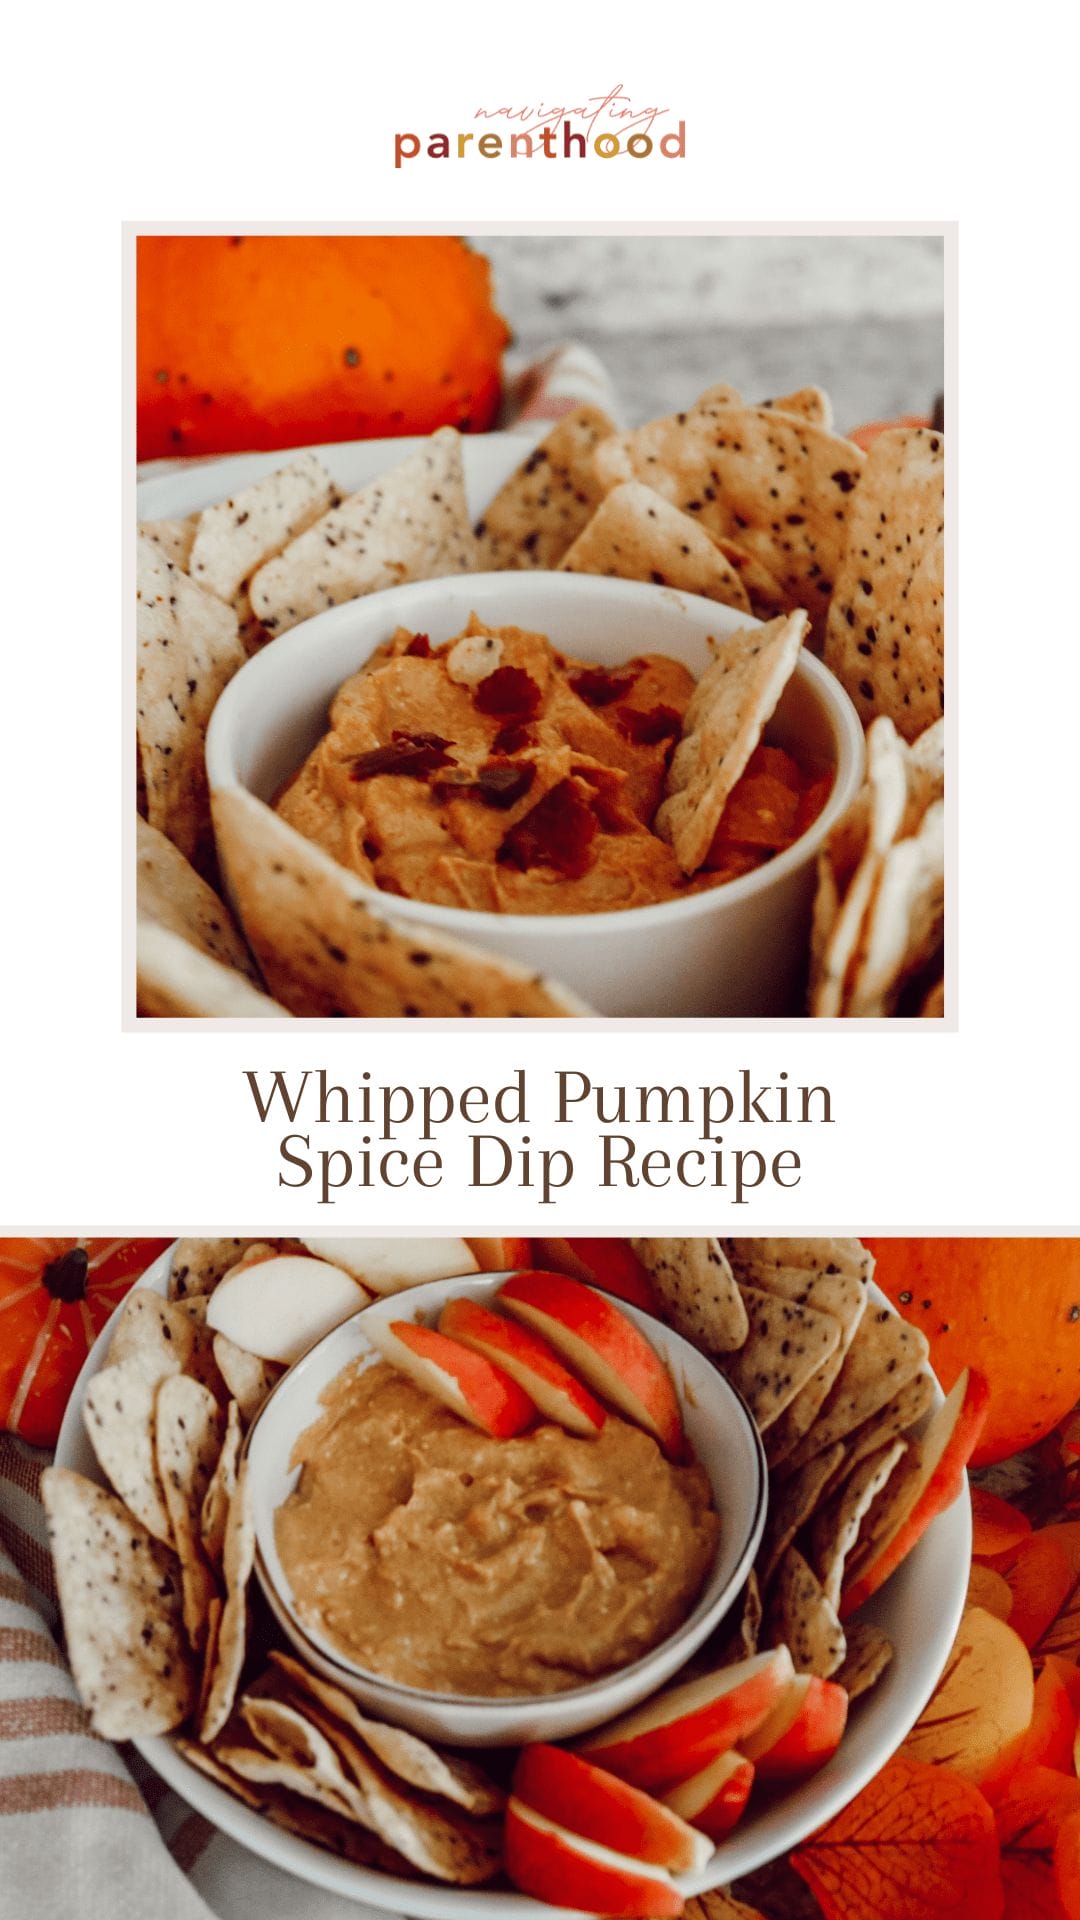 whipped pumpkin dessert recipe pin